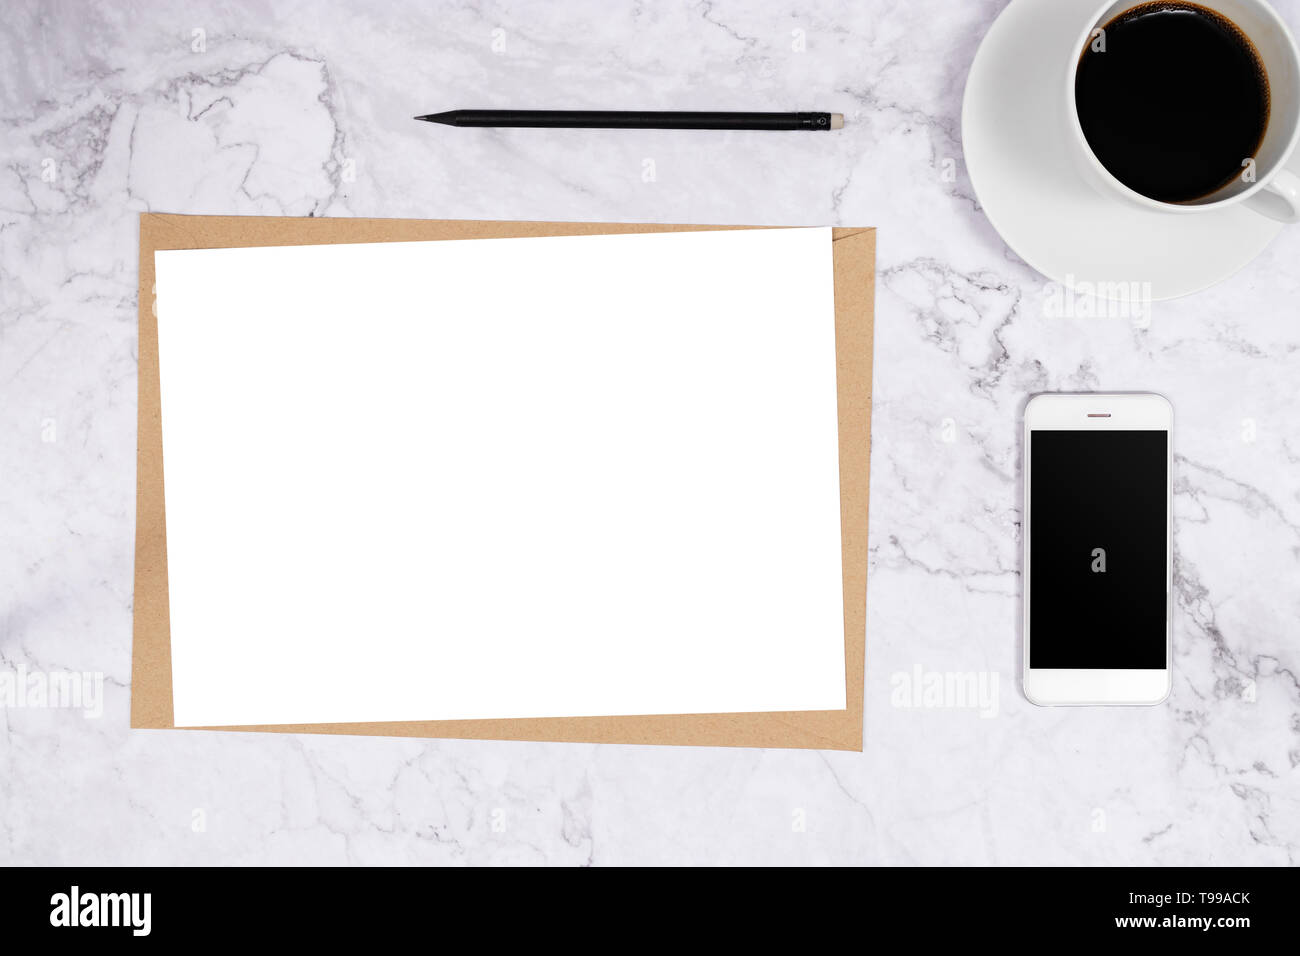 Format de papier blanc A4 sur l'enveloppe de papier brun sur fond de marbre blanc téléphone mobile avec crayon et du café noir. télévision minimaliste lay, vue d'en haut. Banque D'Images